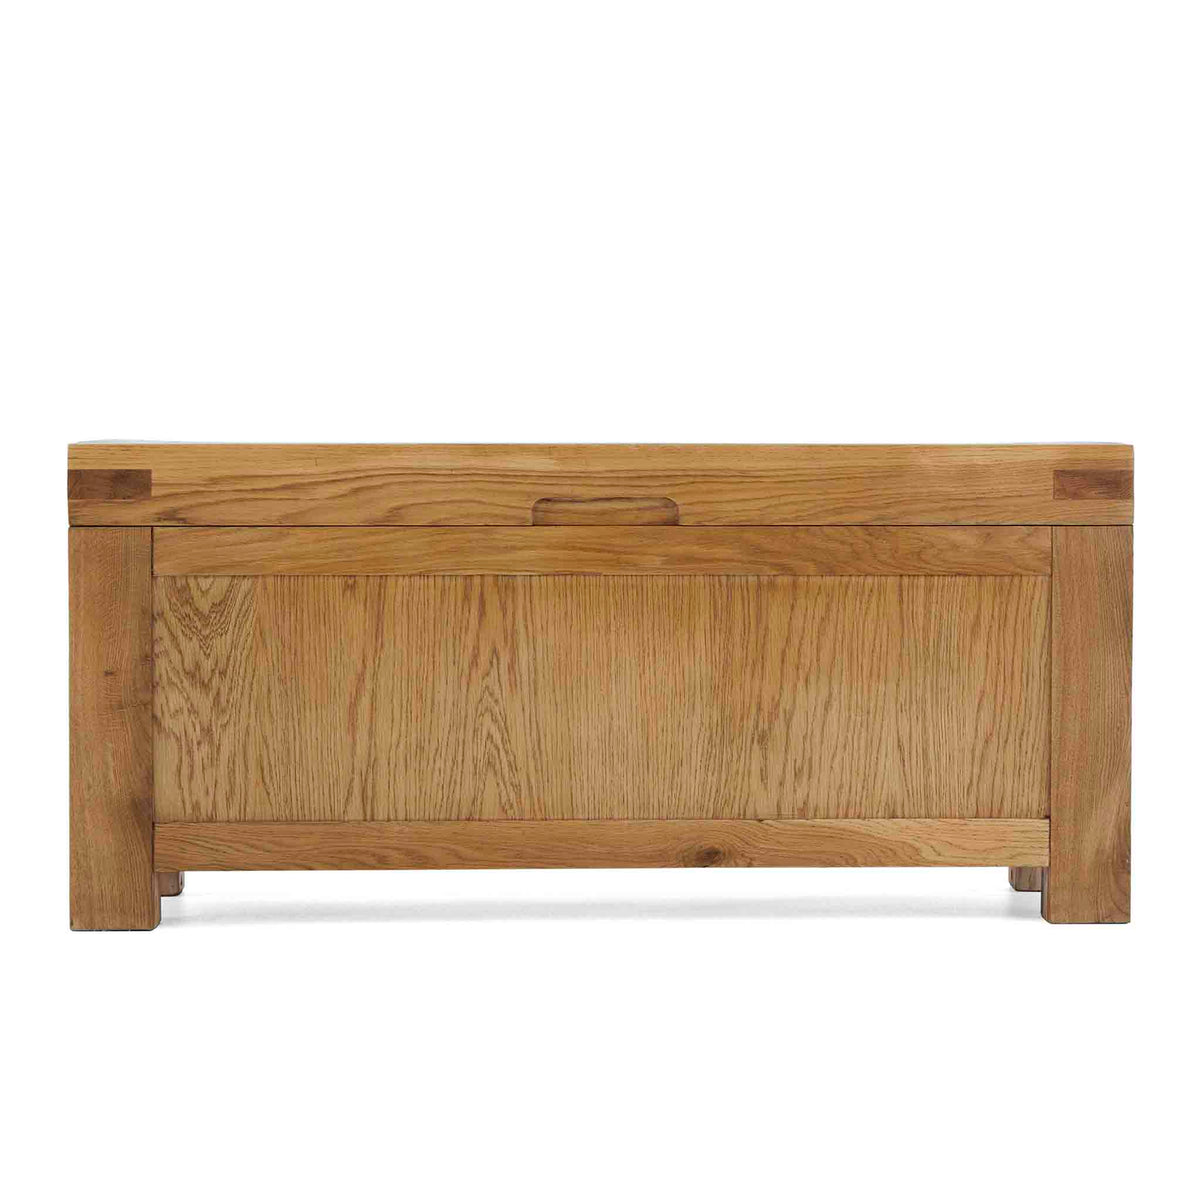 Abbey Grande Oak Blanket Box by Roseland Furniture